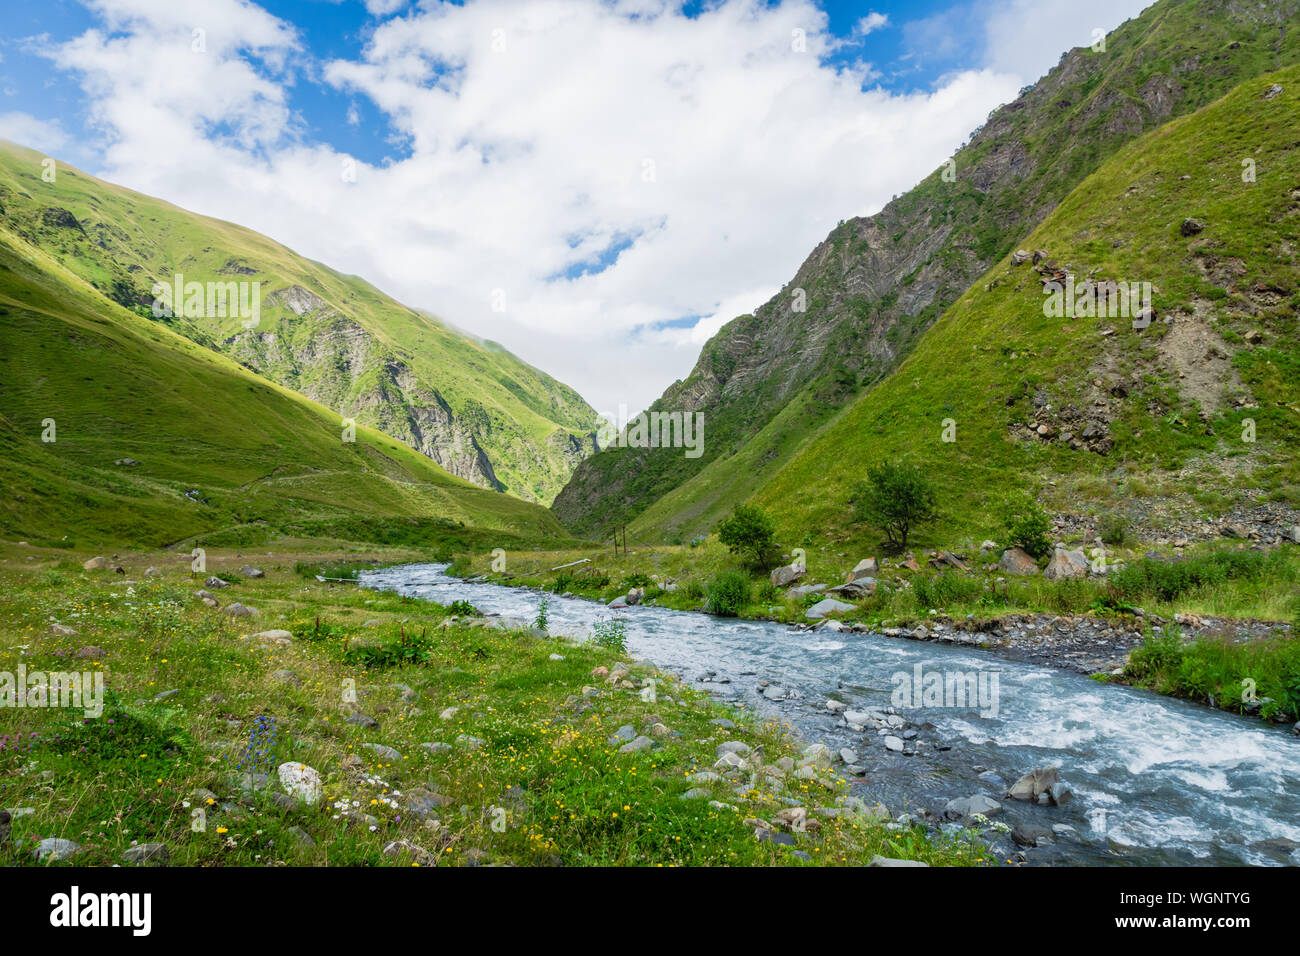 Région de montagne paysage de Kazbegi, Géorgie - paysage spectaculaire de populaires adventure trekking et randonnées dans la région du Caucase. Banque D'Images